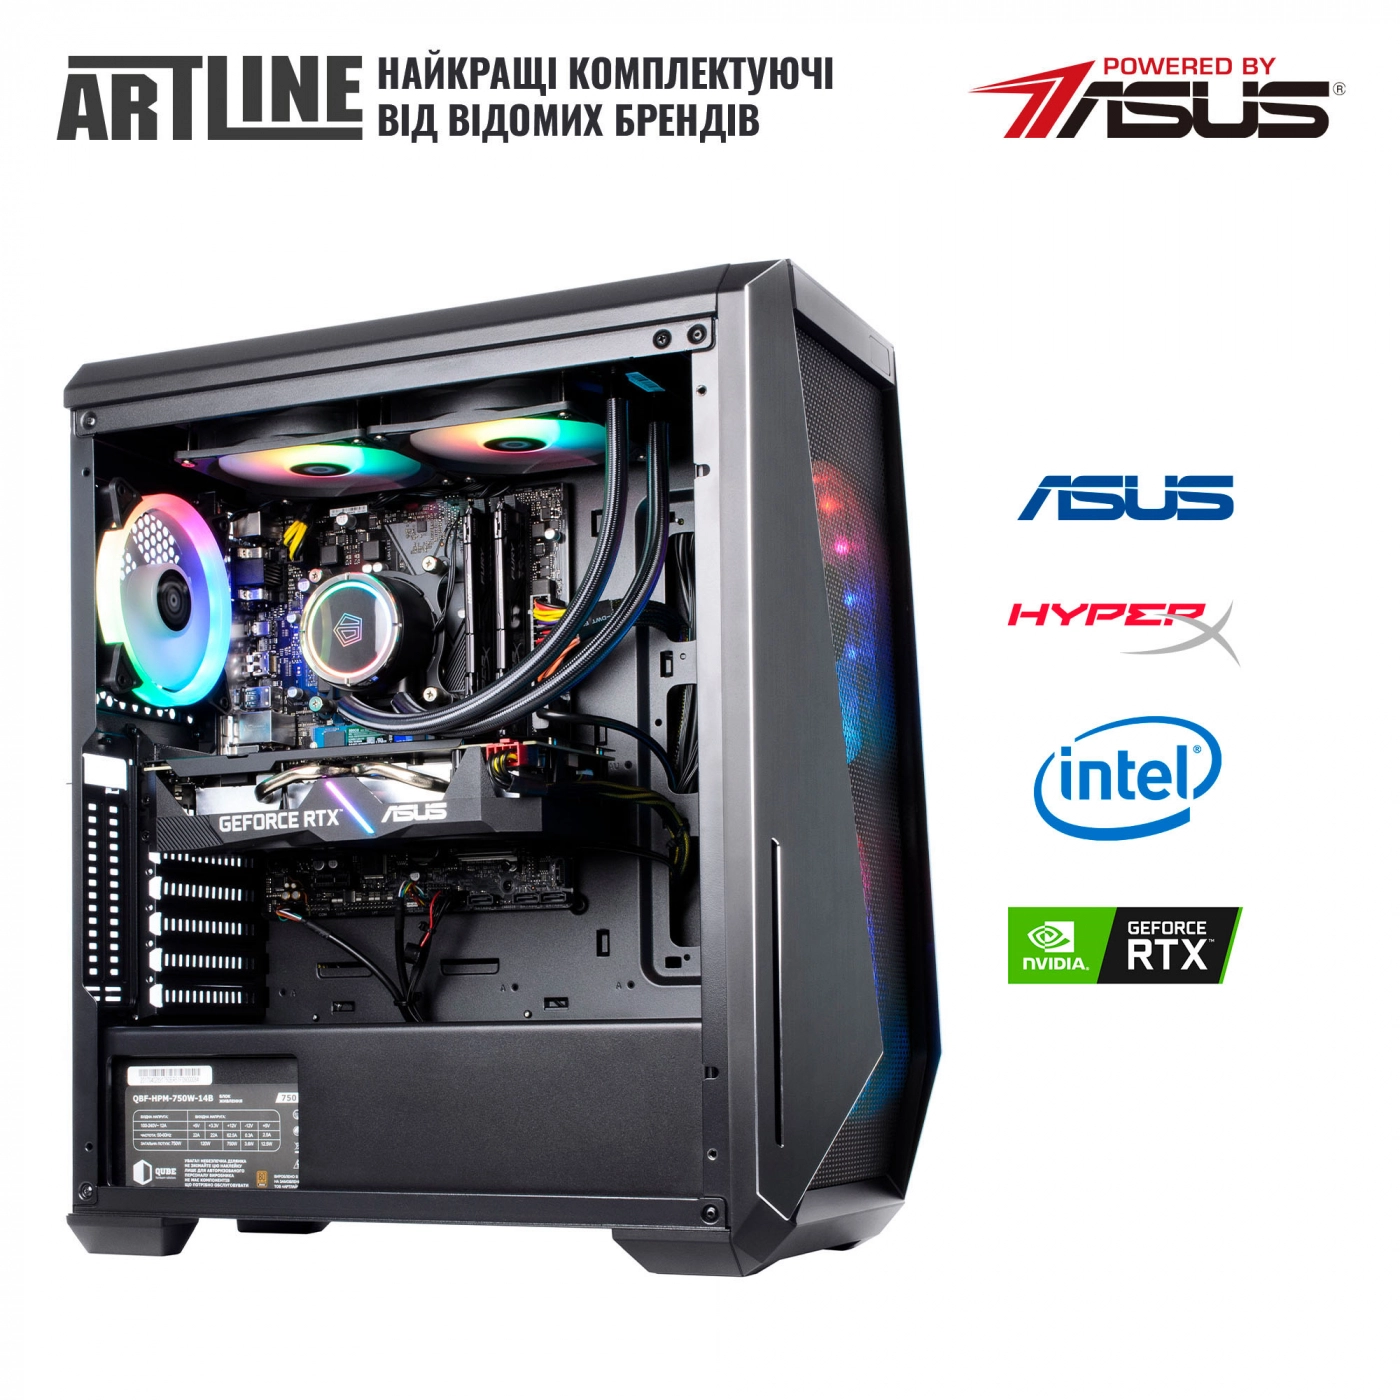 Купить Компьютер ARTLINE Gaming X79v40 - фото 7